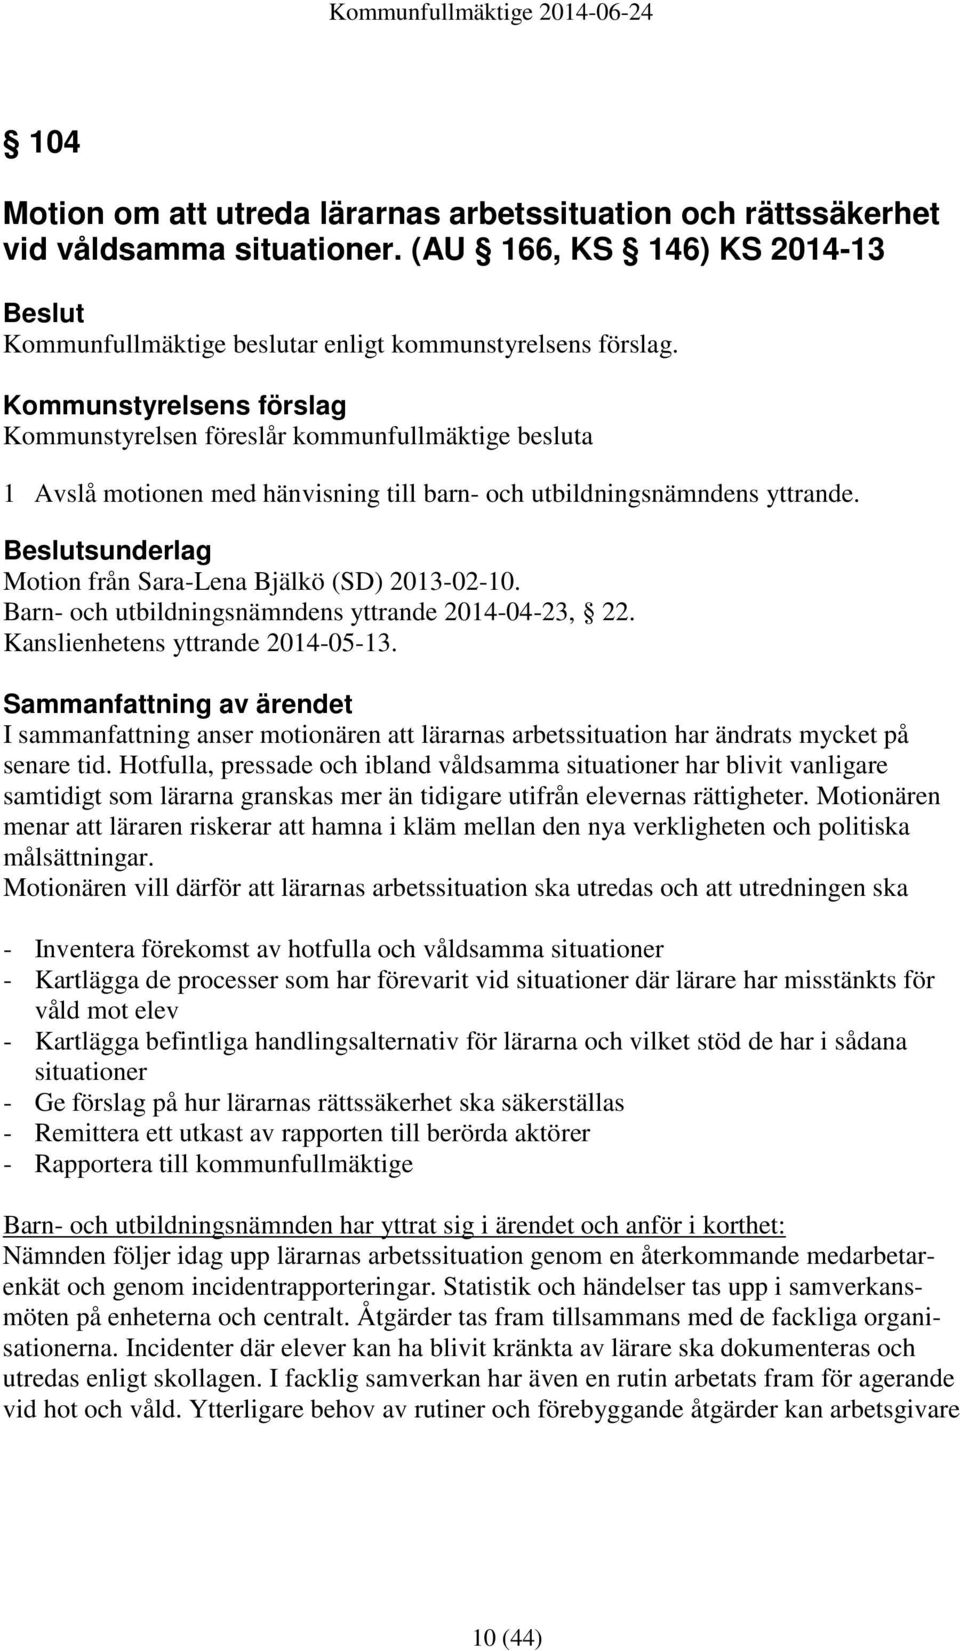 sunderlag Motion från Sara-Lena Bjälkö (SD) 2013-02-10. Barn- och utbildningsnämndens yttrande 2014-04-23, 22. Kanslienhetens yttrande 2014-05-13.